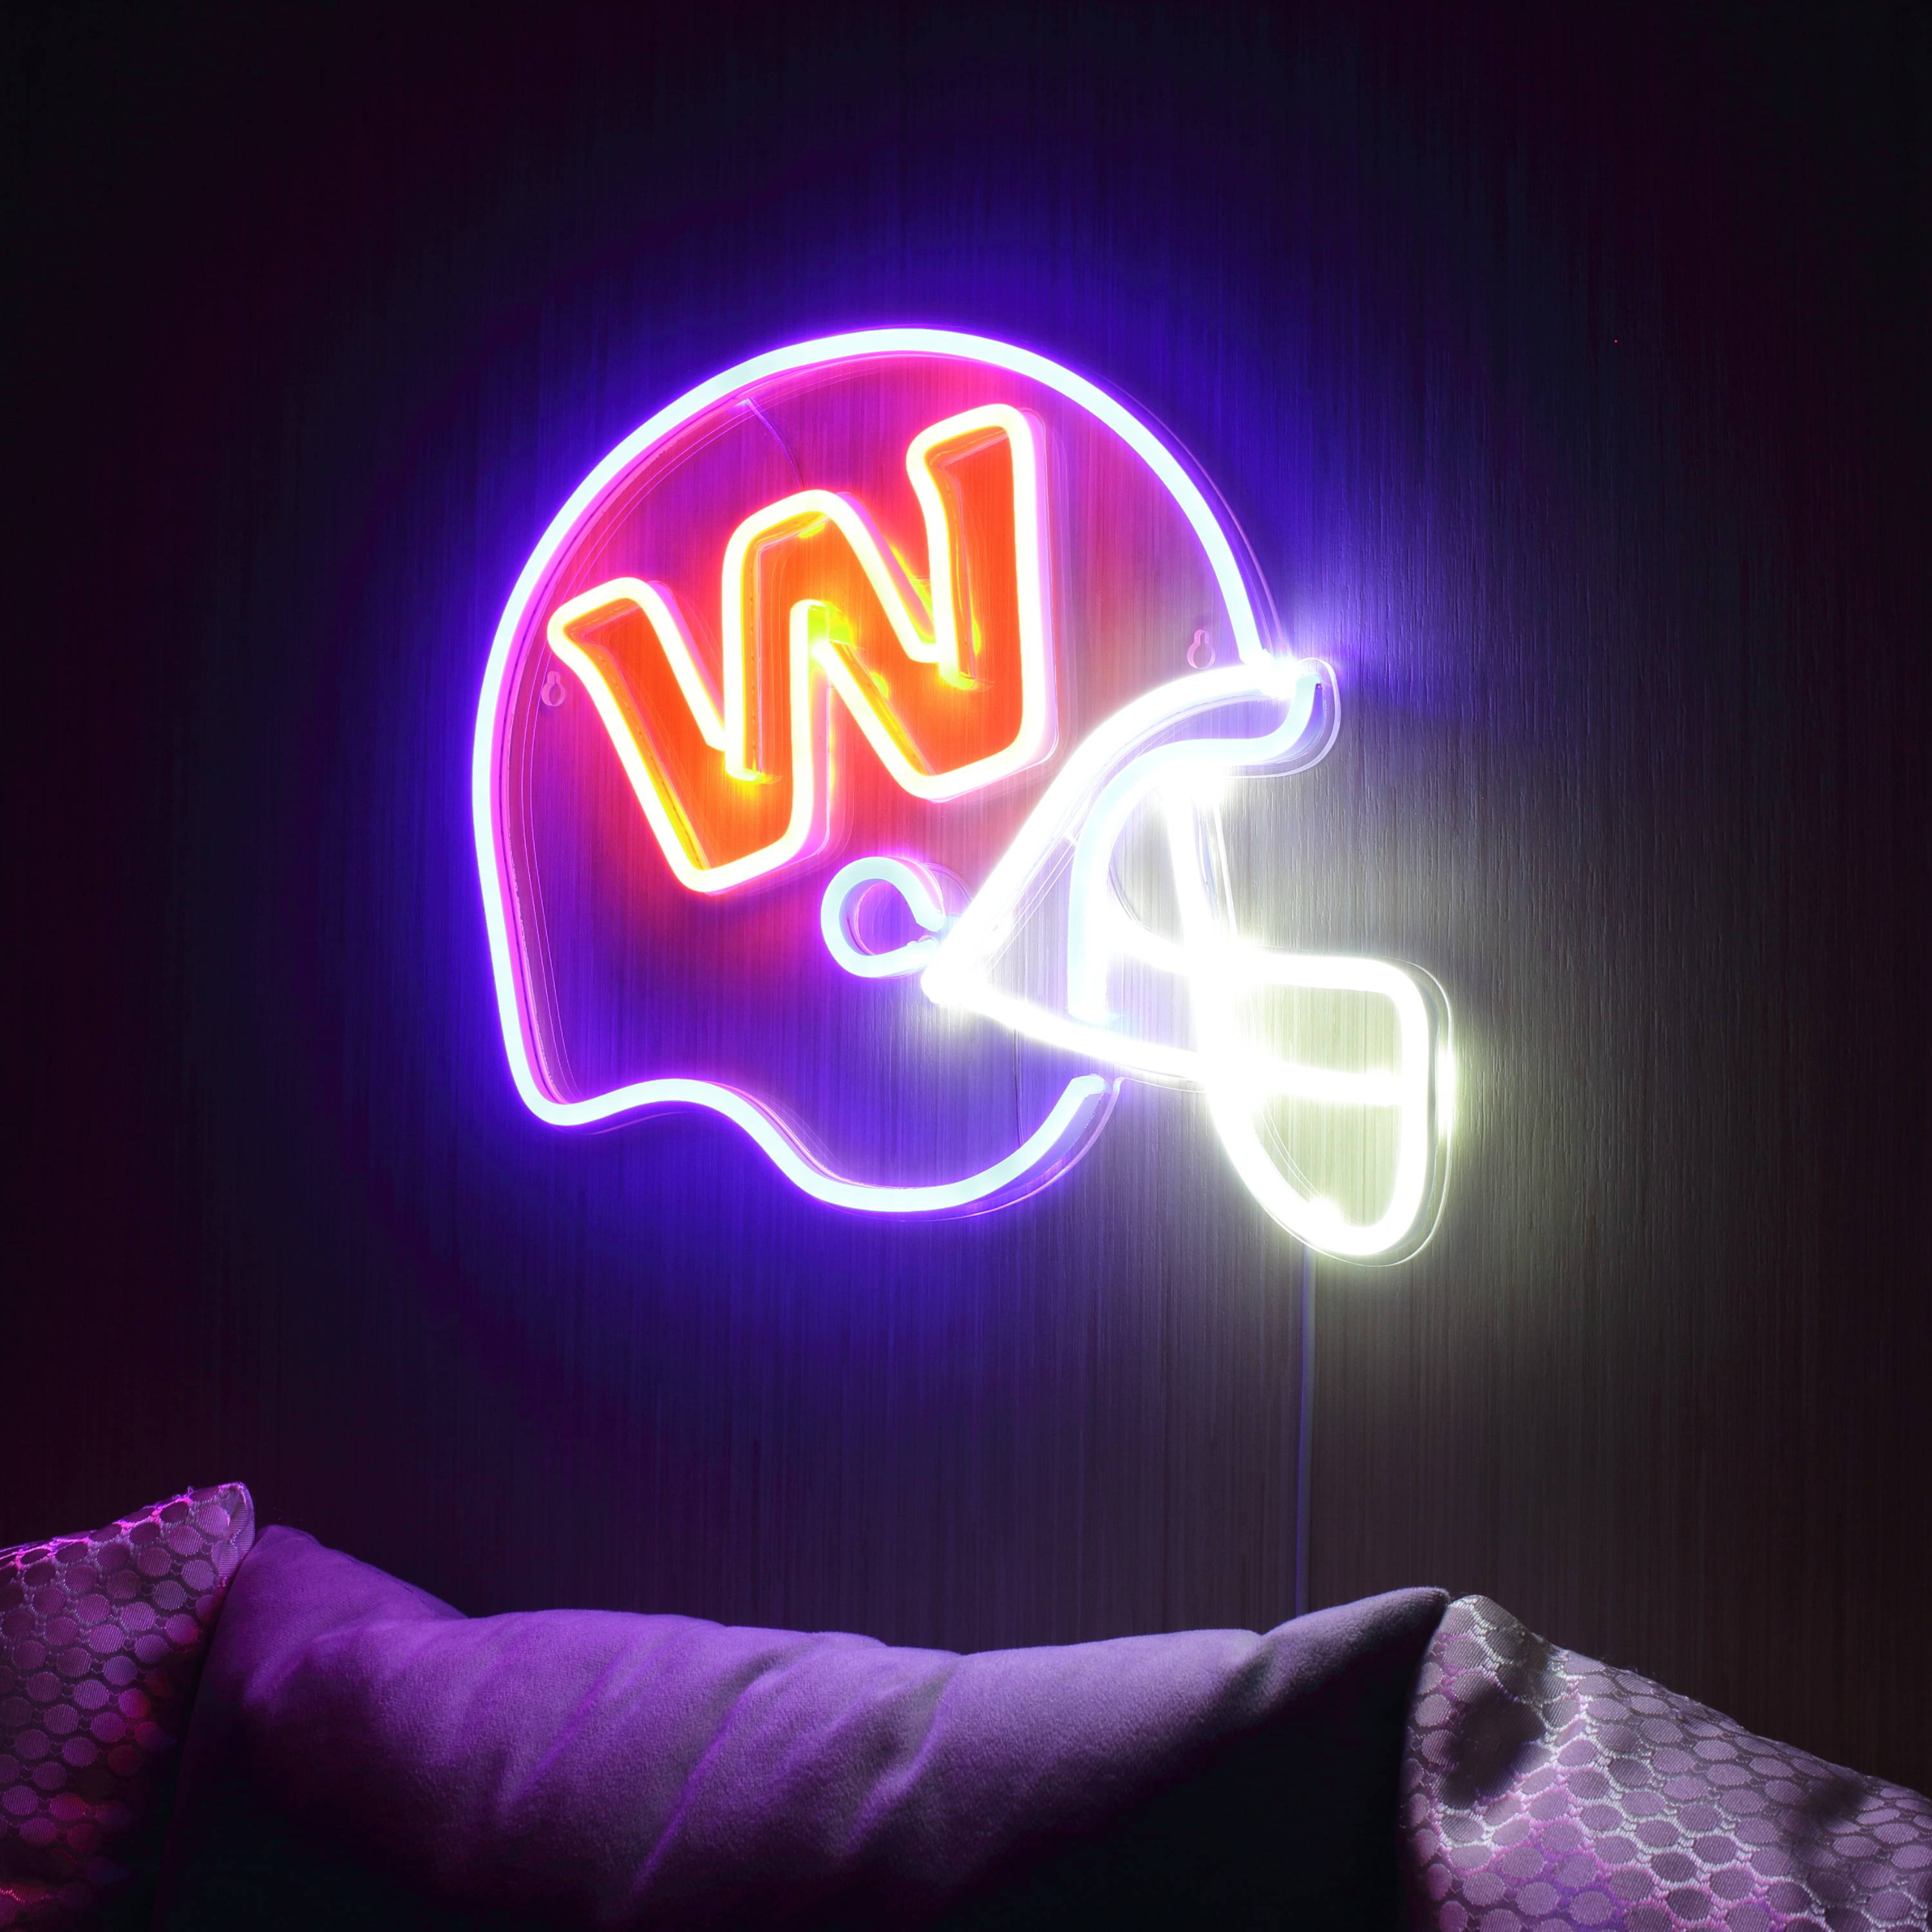 NFL Helmet Washington Football Team LED Neon Sign